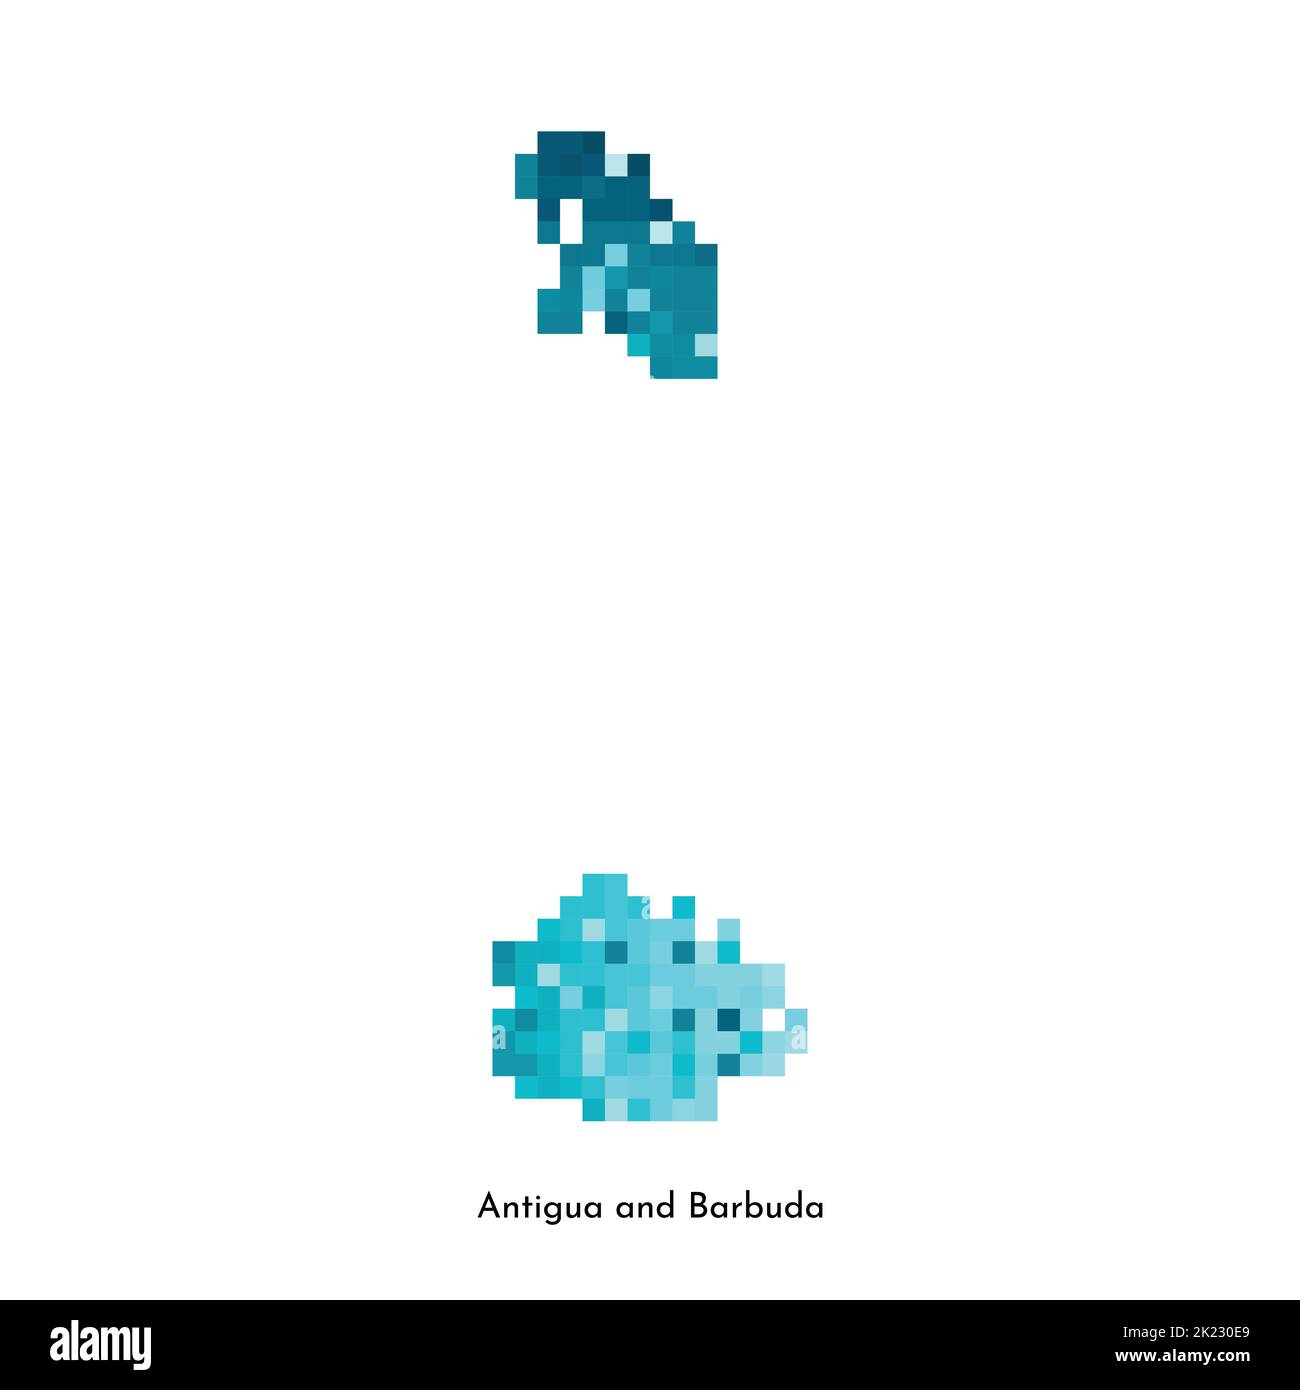 Vektor isolierte geometrische Illustration mit vereinfachter eisblauer Silhouette von Antigua und Barbuda Karte. Pixel-Art-Stil für NFT-Vorlage. Gepunktetes Logo mit Stock Vektor